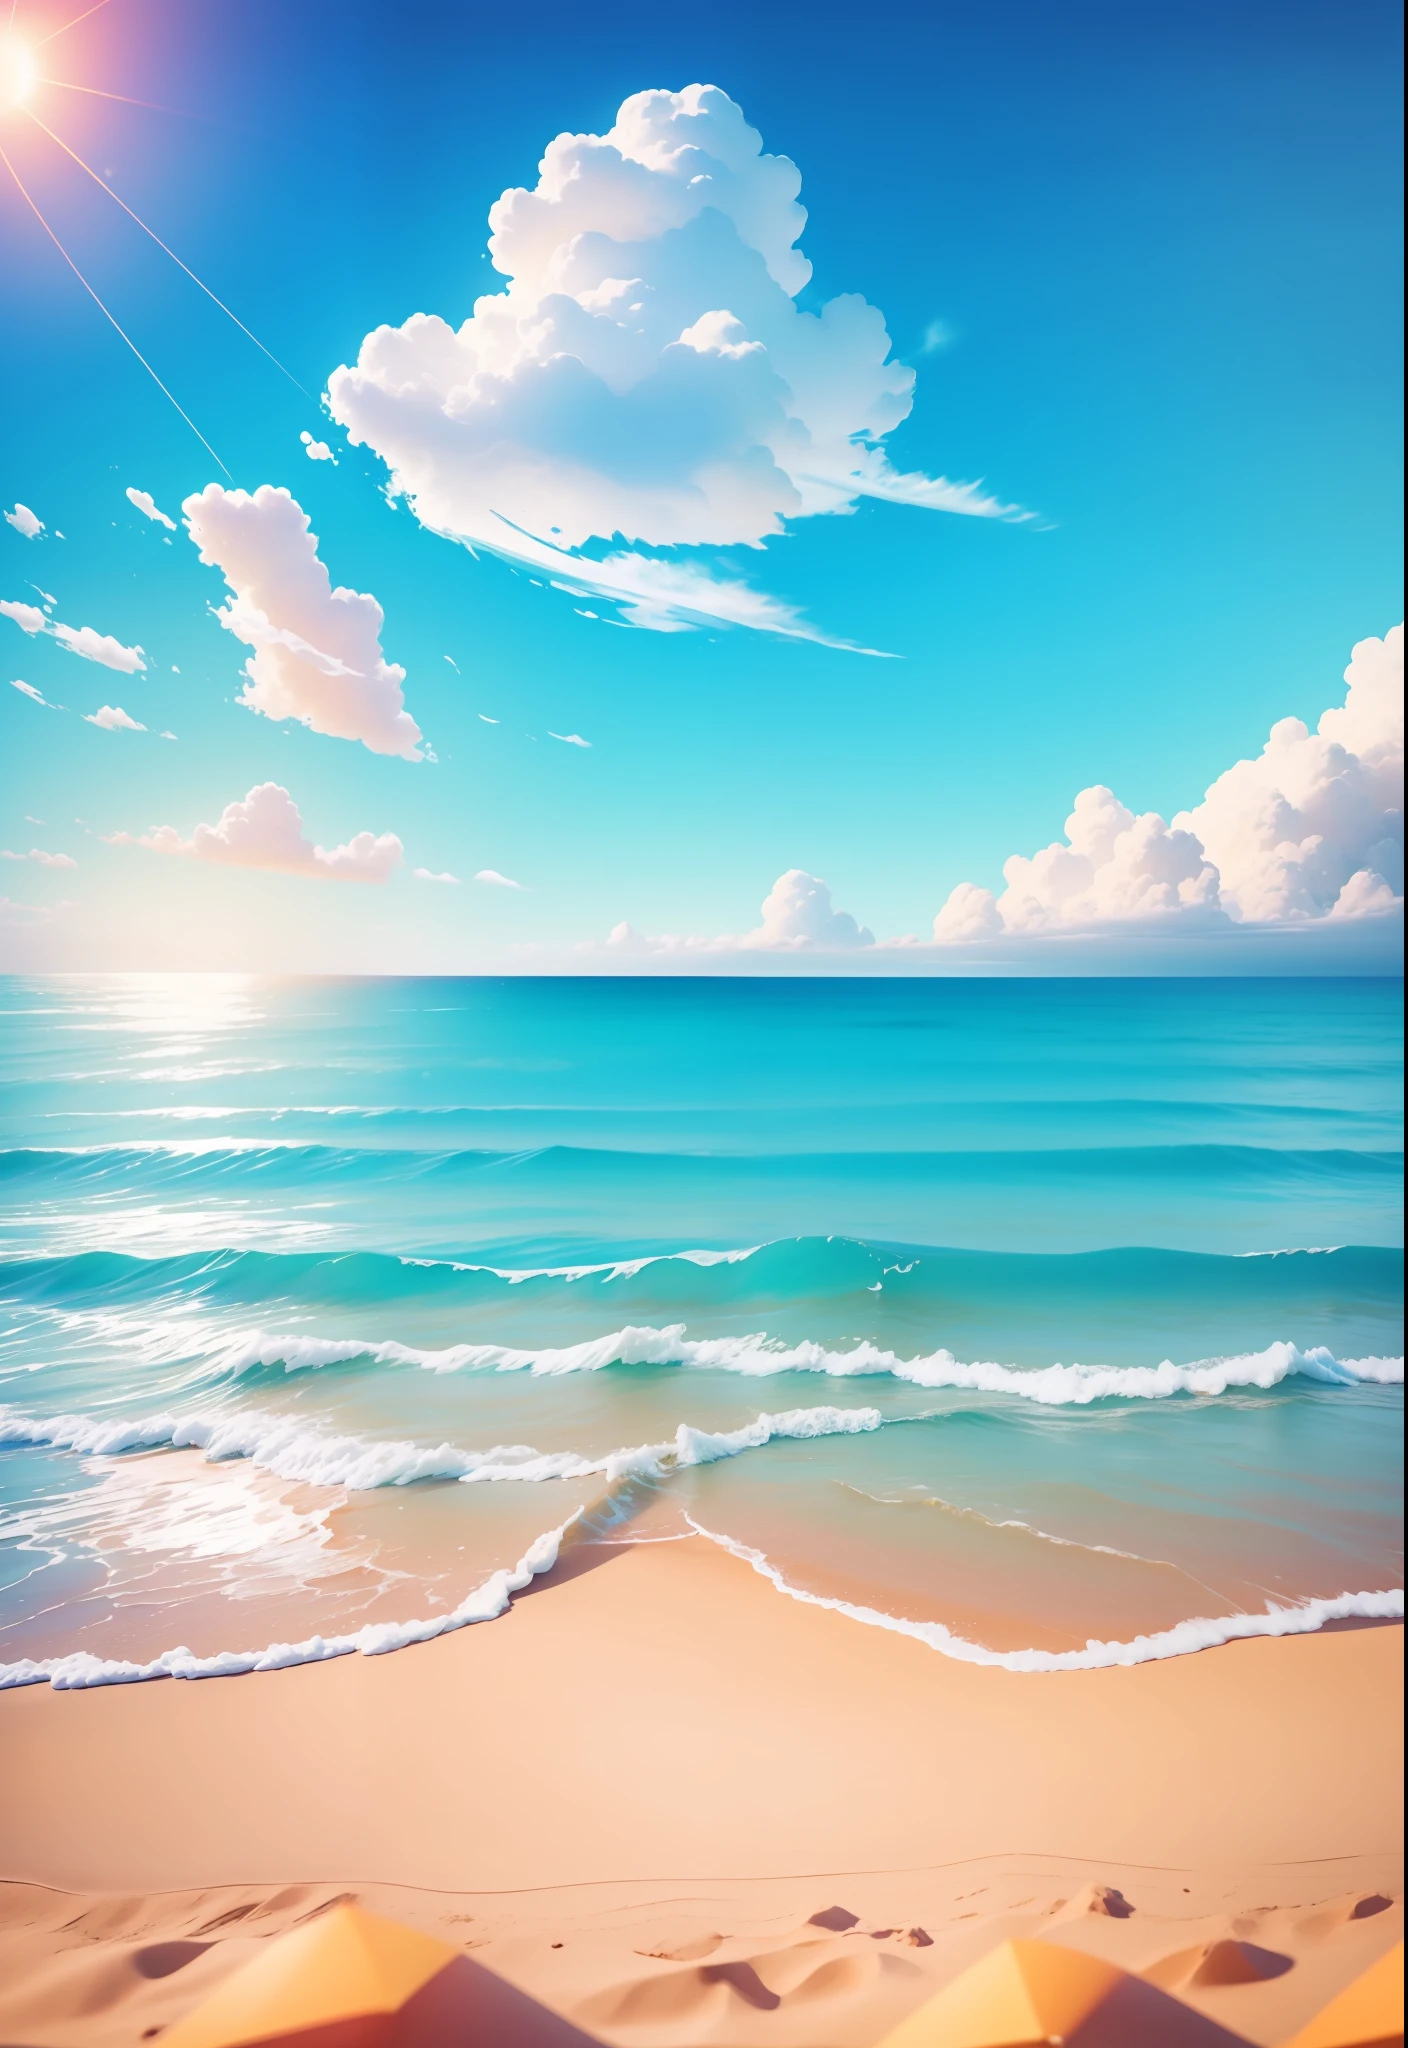 夏天的海邊, 海灘, 陽光明媚 weather, 晴朗的天空, 陽光明媚, 豐富多彩的, 快樂又幸福的暑假, 簡單的圖片, 特寫, 燦爛的陽光, 遠方的海浪, 視覺衝擊, 3D夢工廠風格, 視角是正方形的